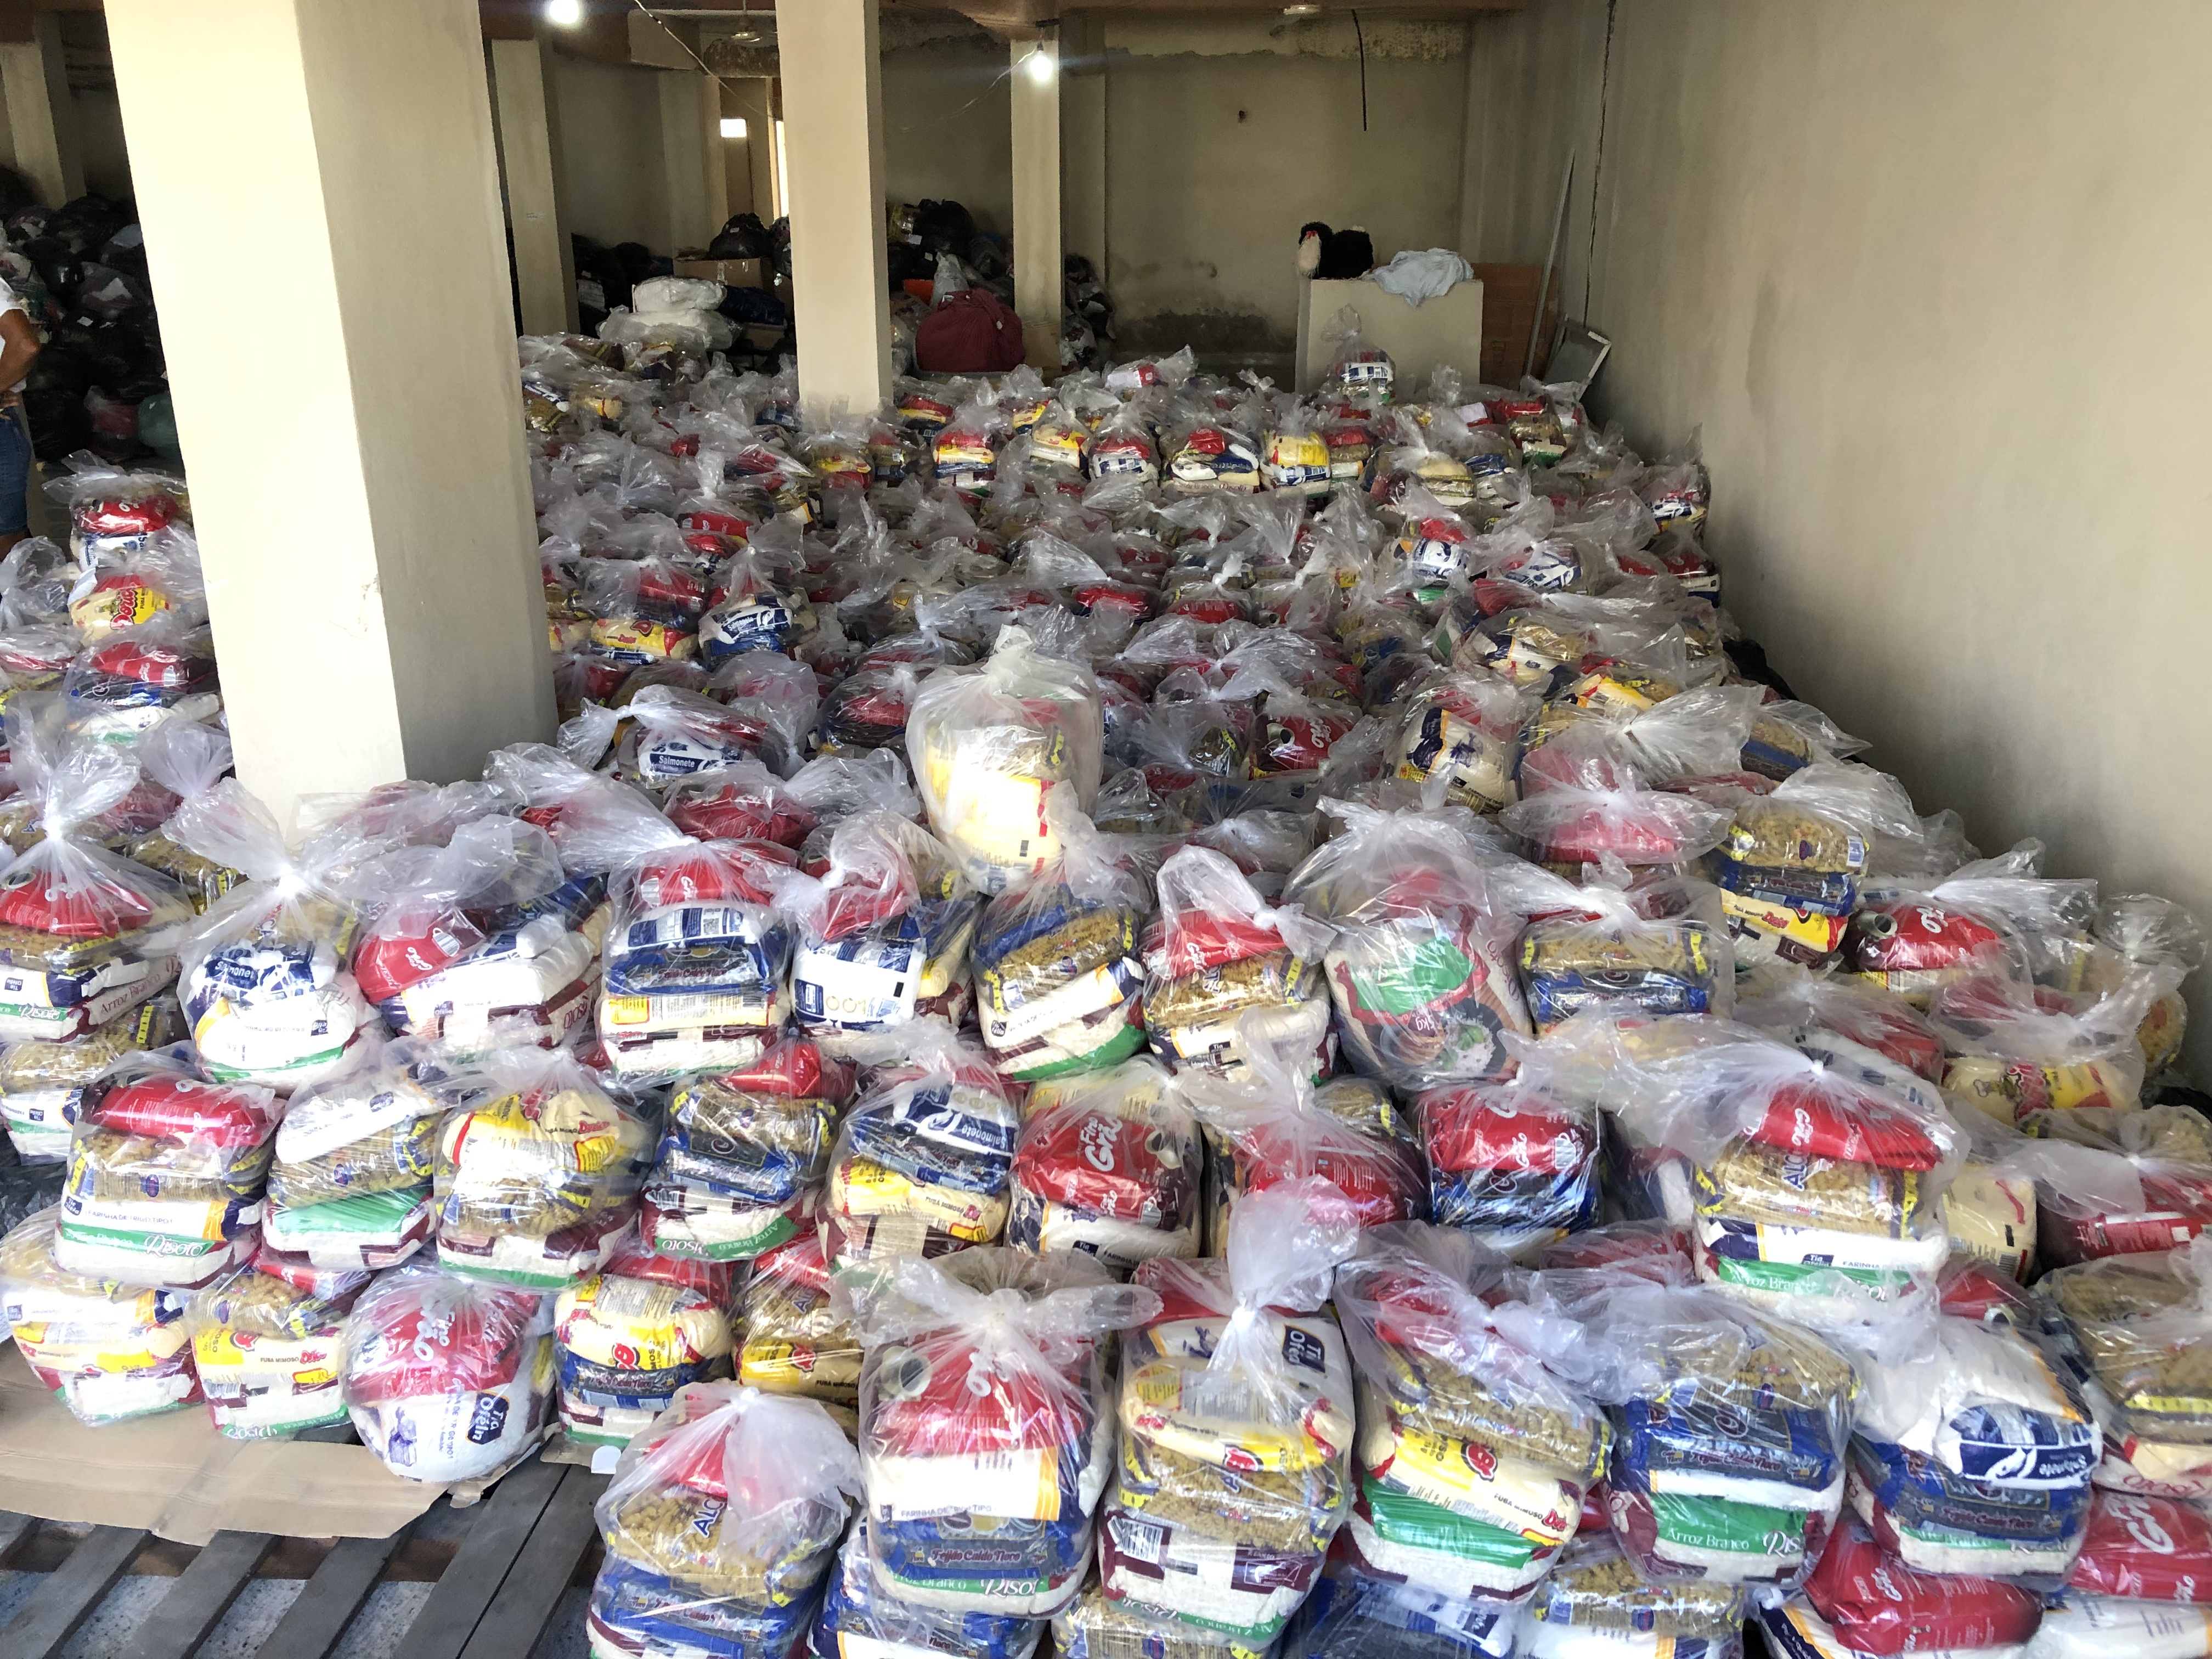 Associação Evangelizar doa 8 toneladas de alimentos às vítimas da enchente em Mimoso do Sul